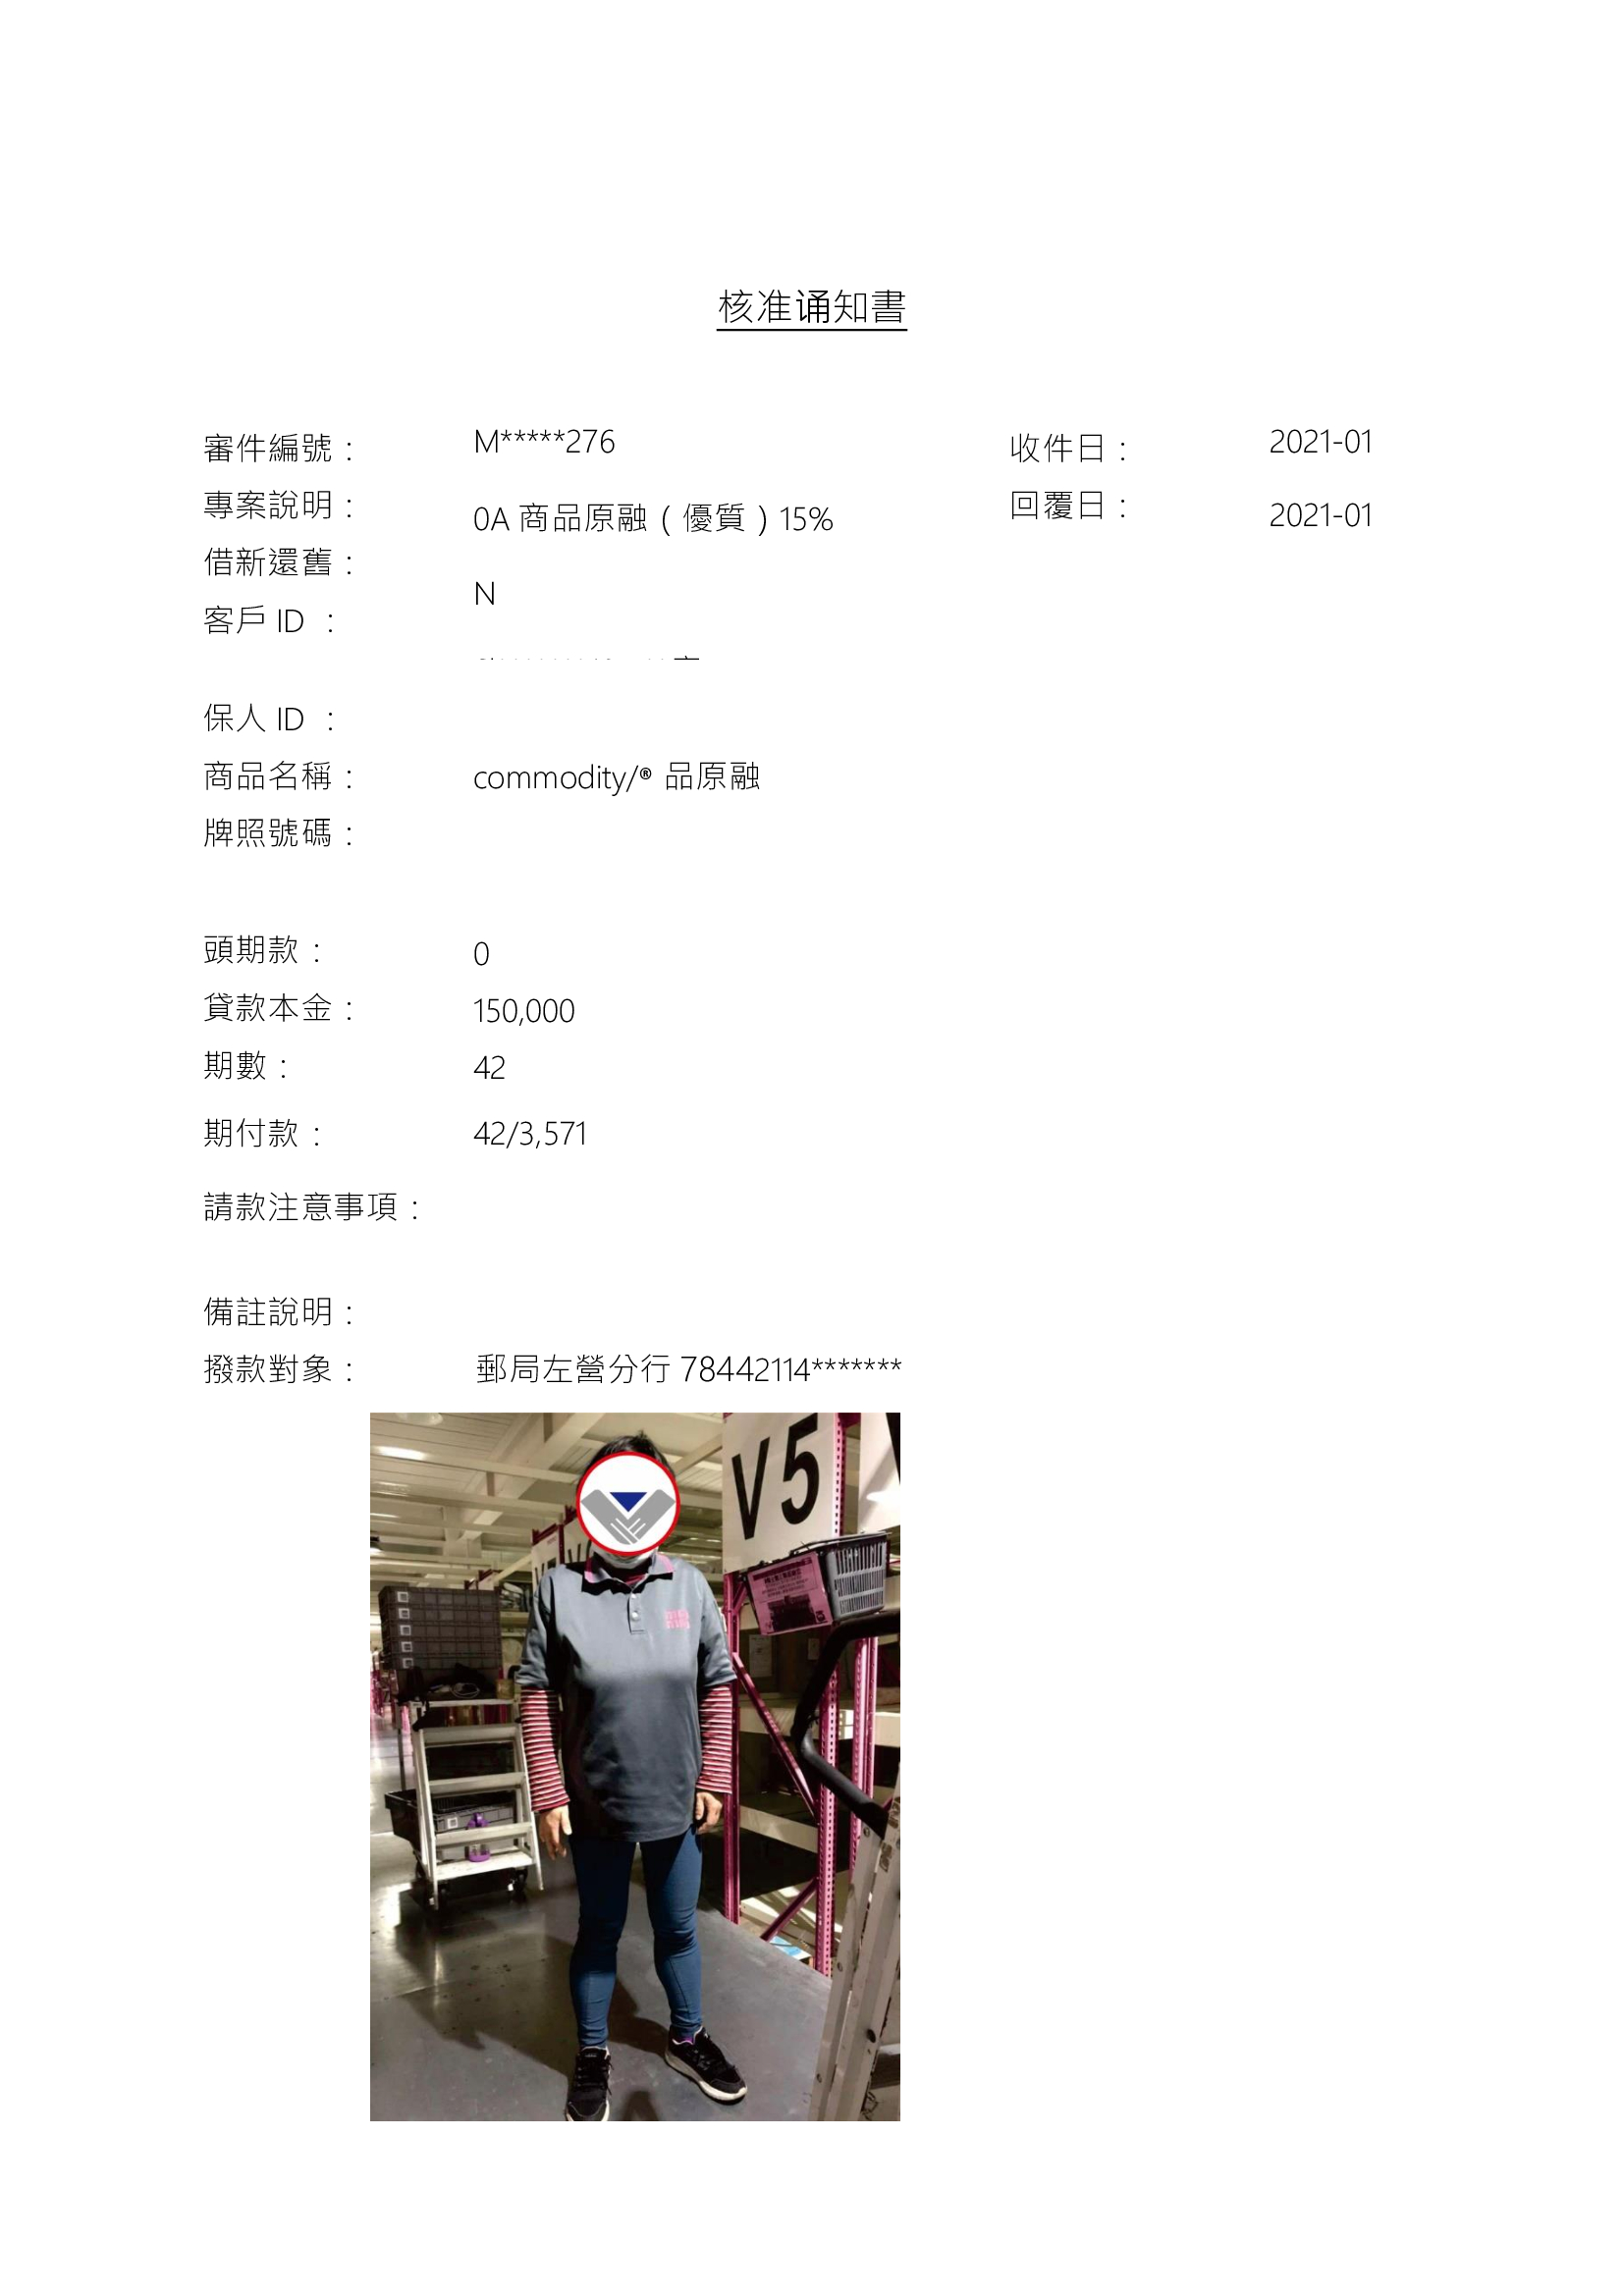 「2021年1月」 核准15萬桃園 劉小姐 30歲 工作於人力公司 當理貨人員